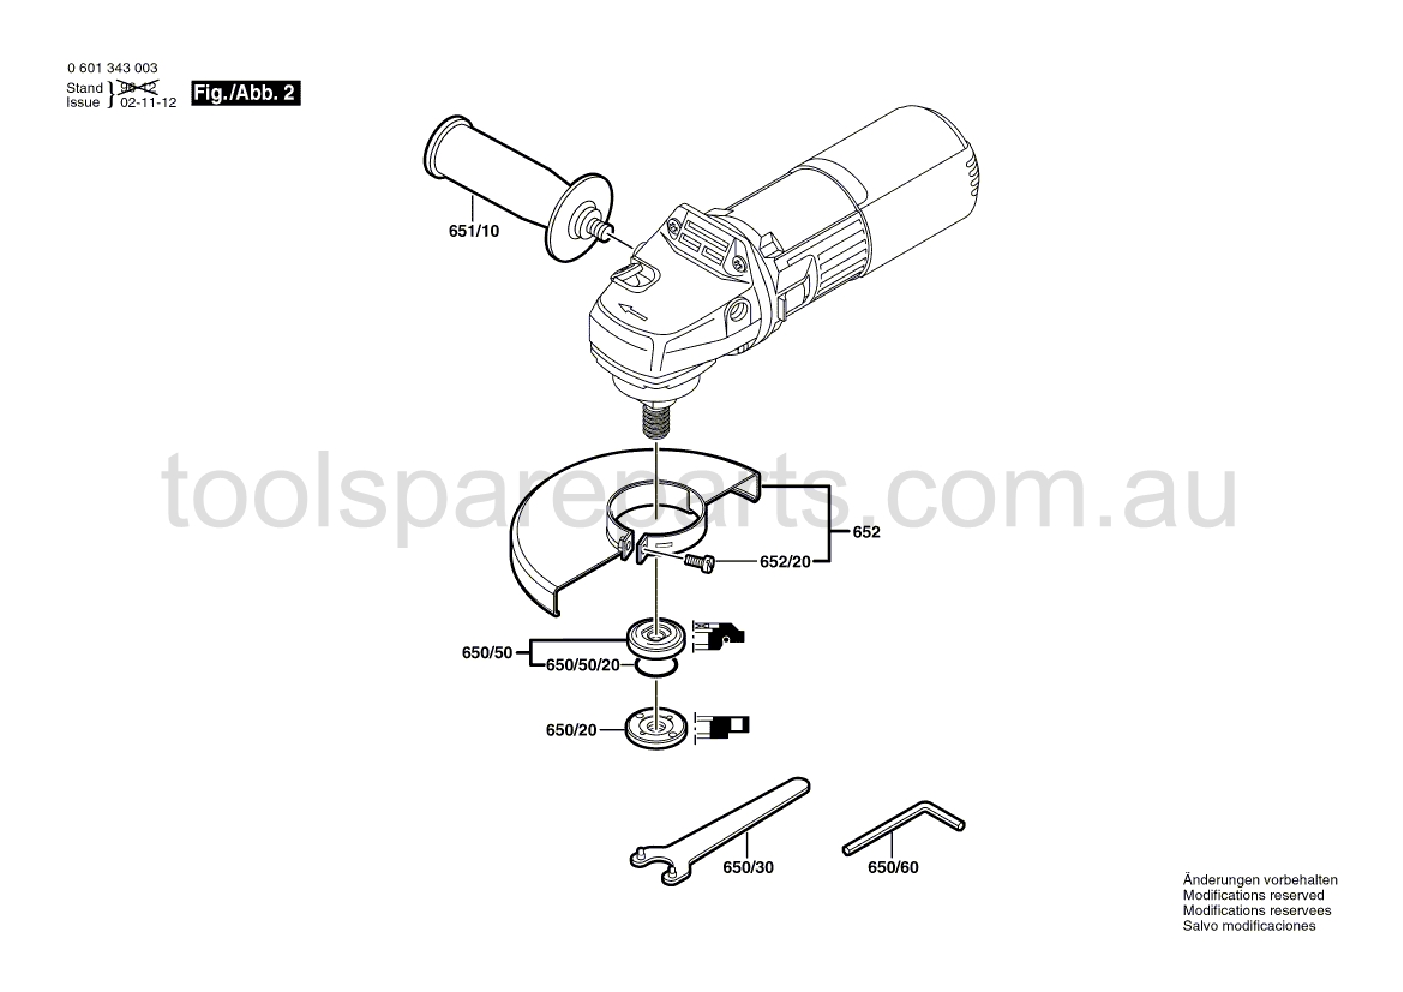 Bosch GWS 9-125 CS 0601343037  Diagram 2